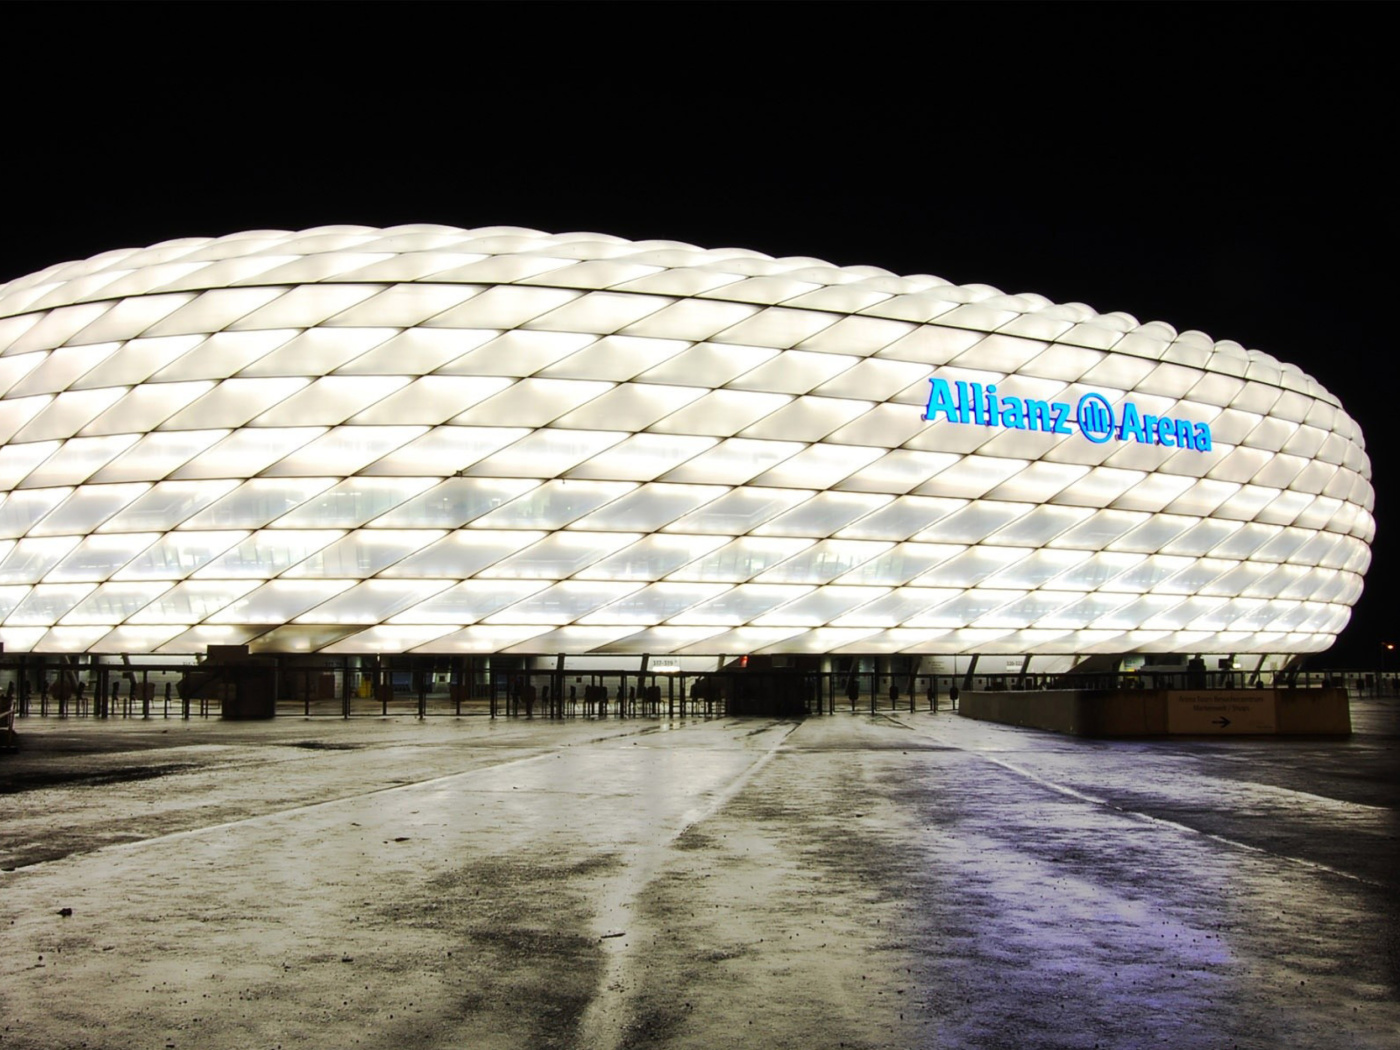 Allianz Arena is stadium in Munich screenshot #1 1400x1050